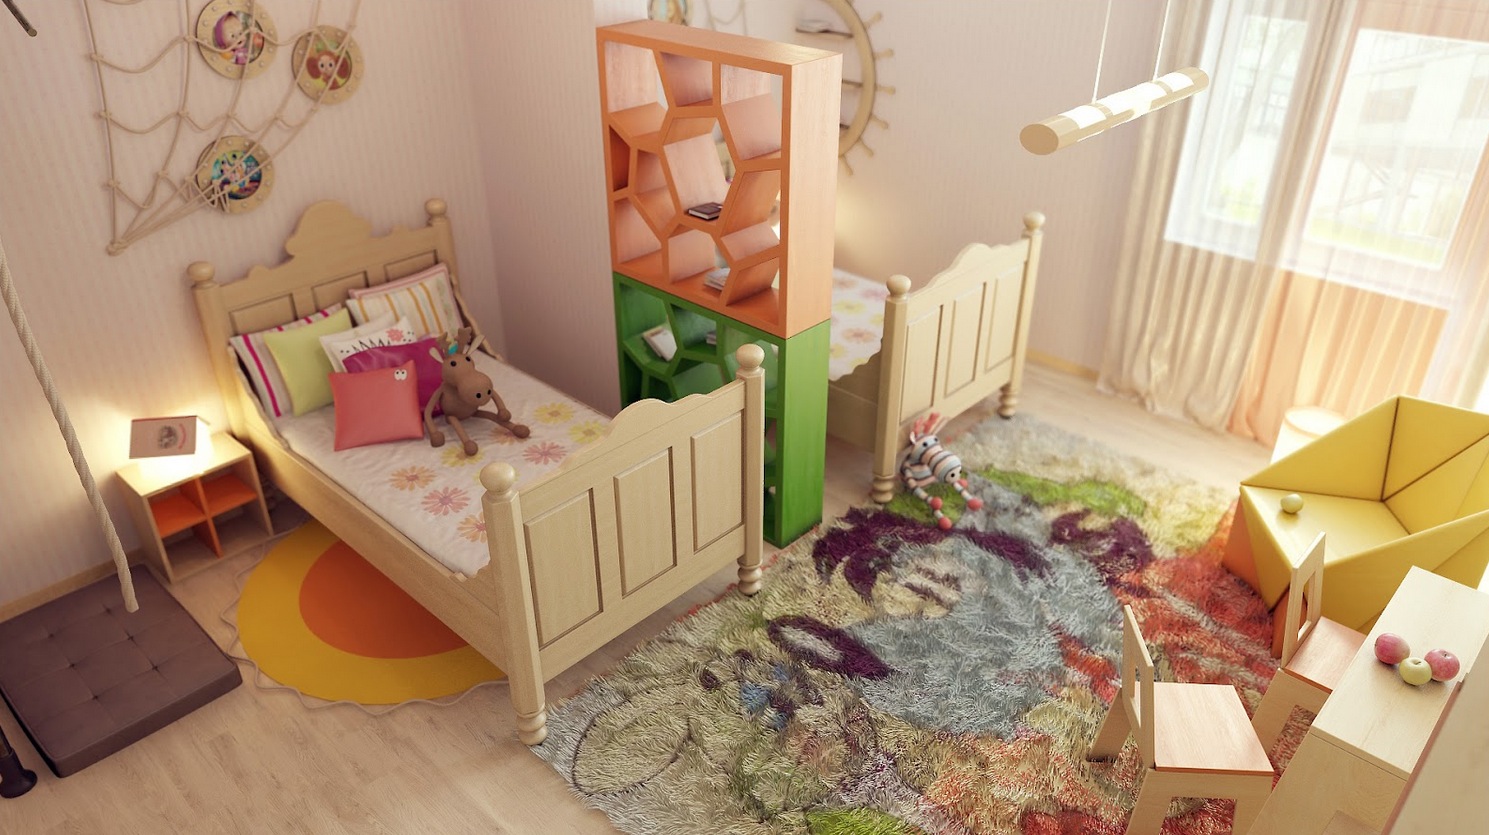 Δωμάτιο για δύο παιδιά: 10 πρακτικές ιδέες οργάνωσης - Φωτογραφία 18